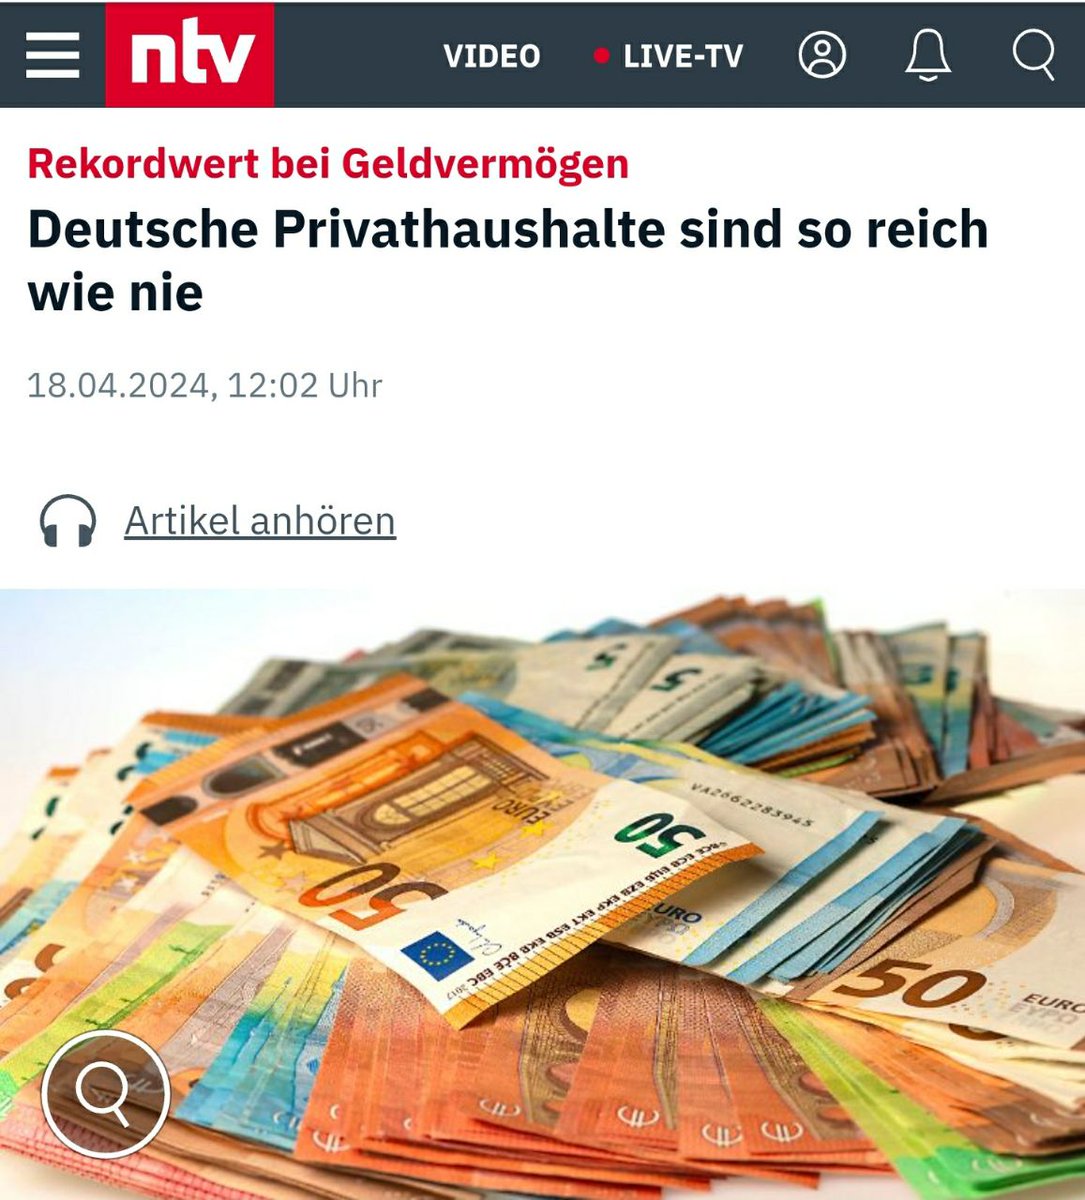 Ich finde mein Geld nicht, es muss irgendwo anders sein ... was macht ihr so mit eurem Reichtum?🥳
#Privathaushalt #Reichtum #Deutschland